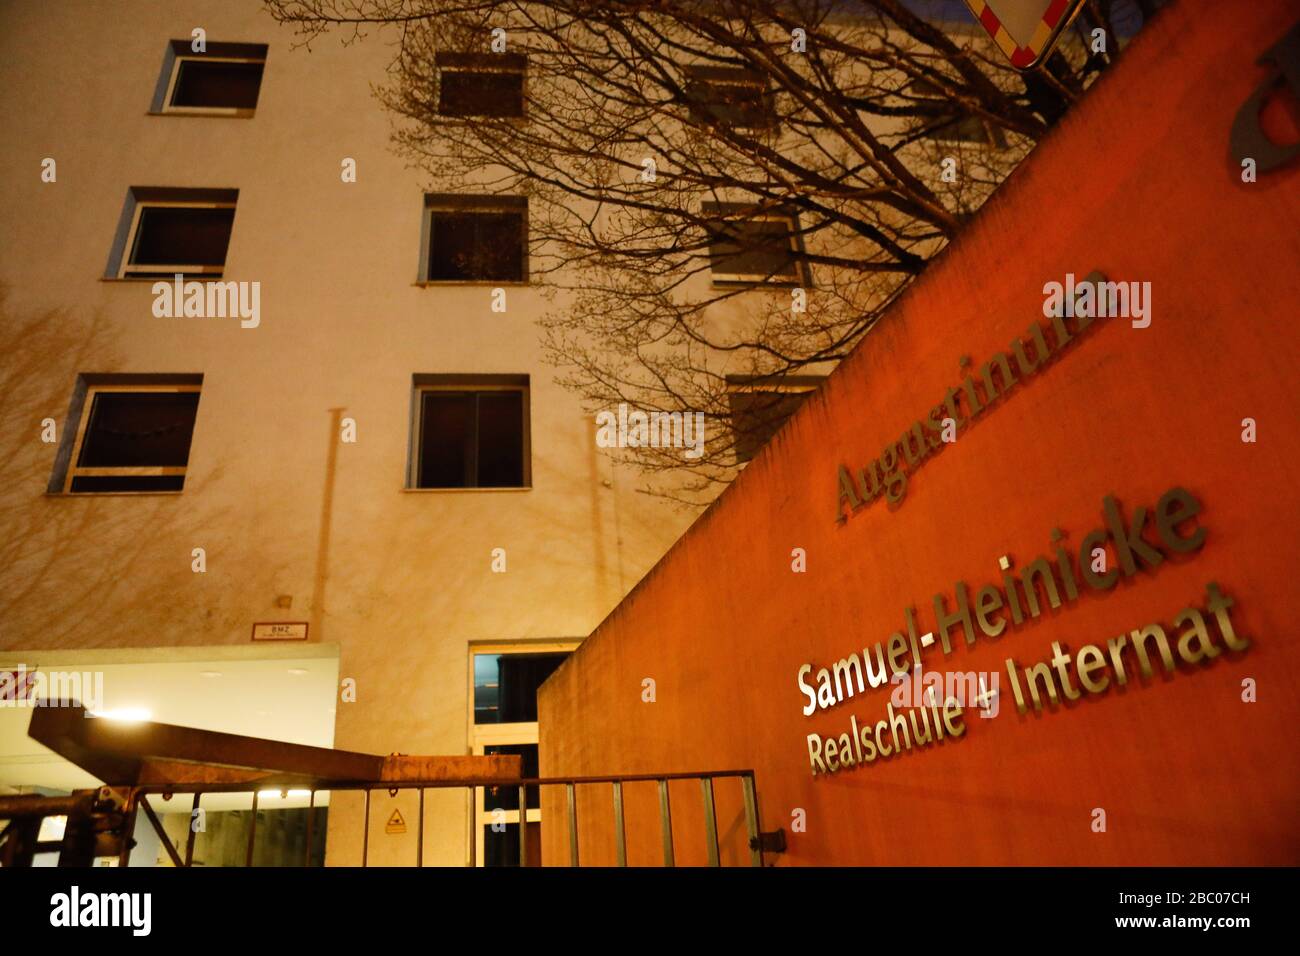 Ingresso alla Samuel-Heinecke-Realschule di Monaco. A causa del virus della corona, questa scuola è chiusa anche in Baviera fino a nuovo avviso. [traduzione automatica] Foto Stock